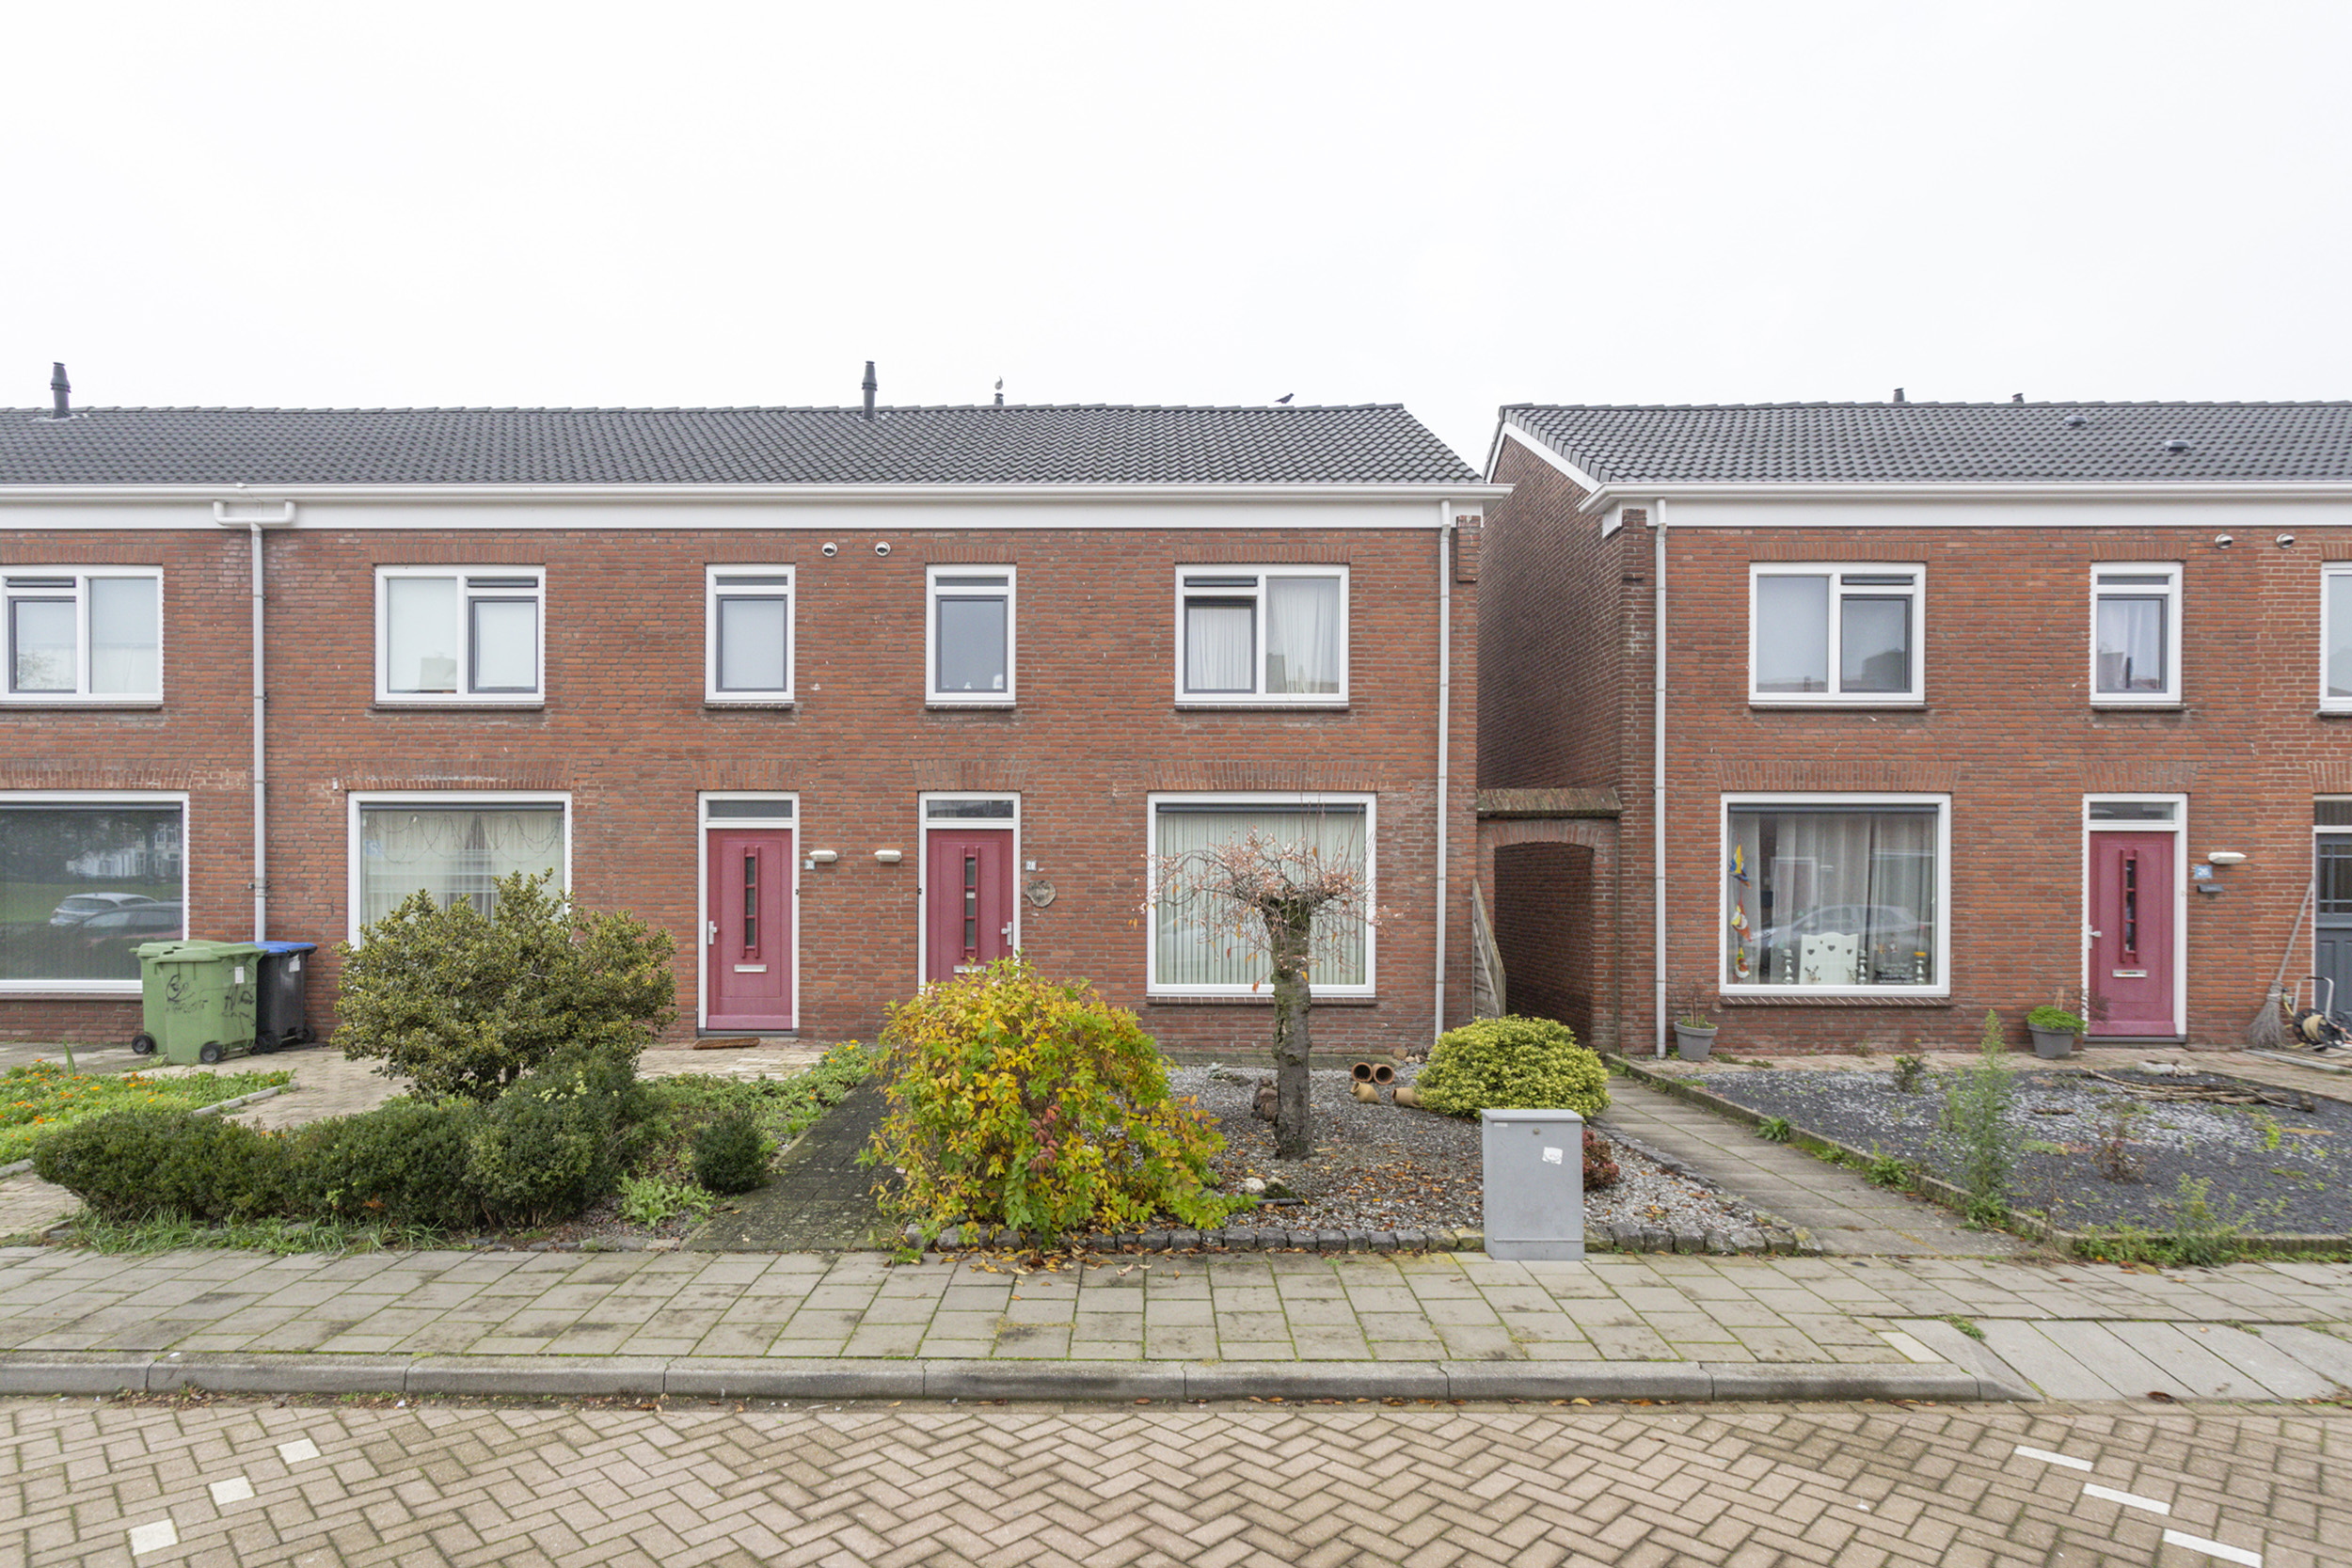 Burgemeester Teijssenstraat 28, 4731 KW Oudenbosch, Nederland